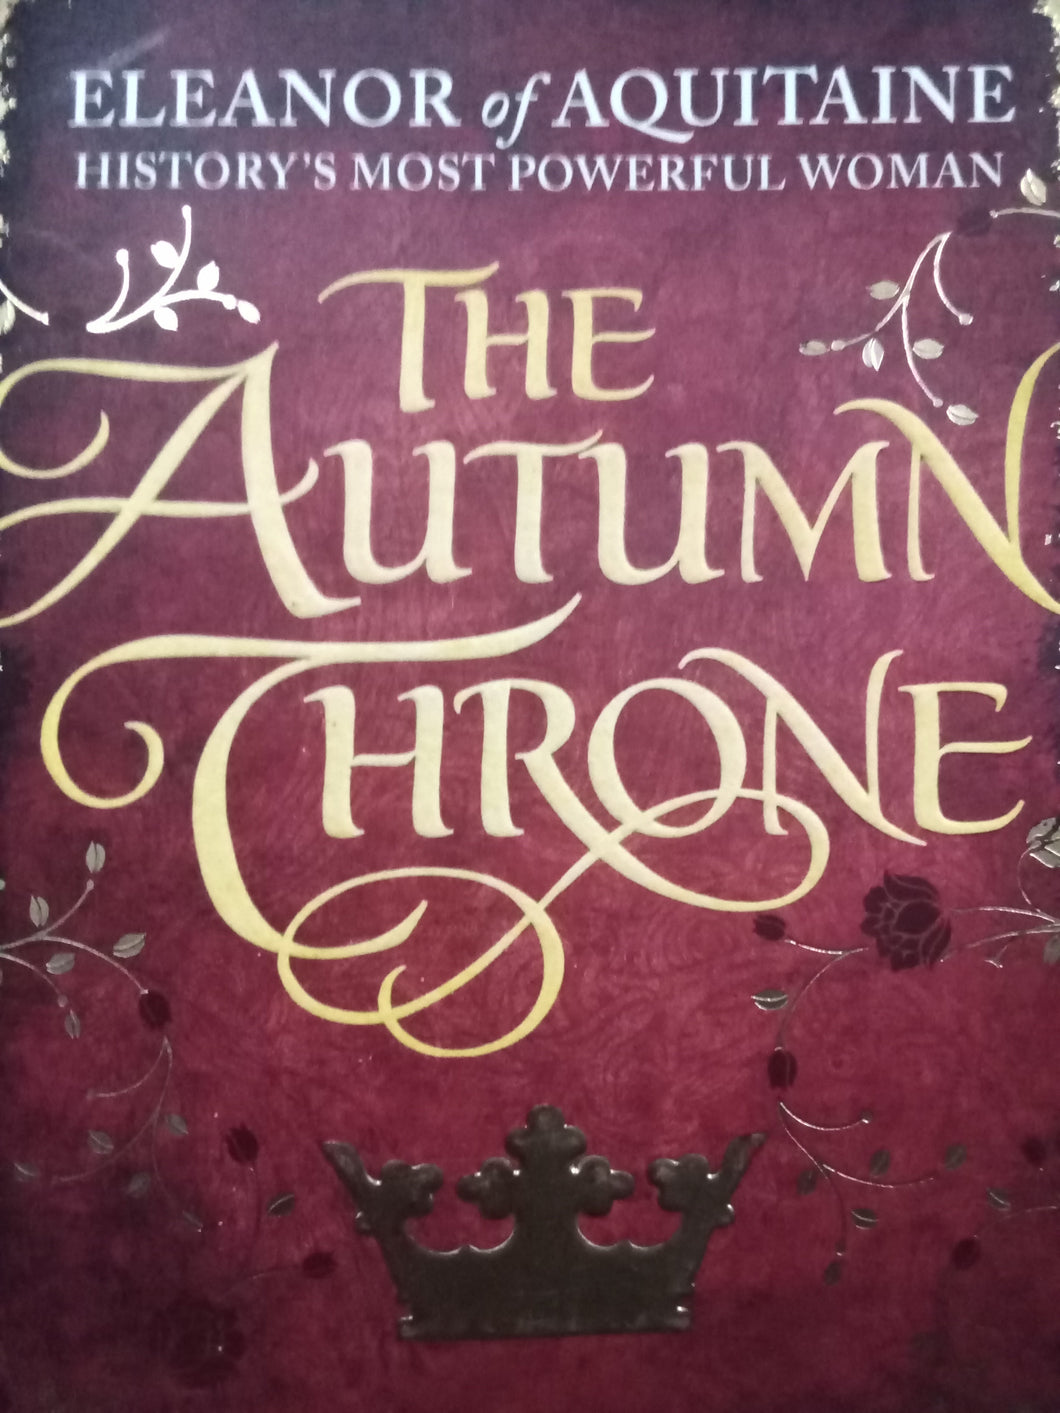 The Auntumn Throne by Elizabeth Chadwick